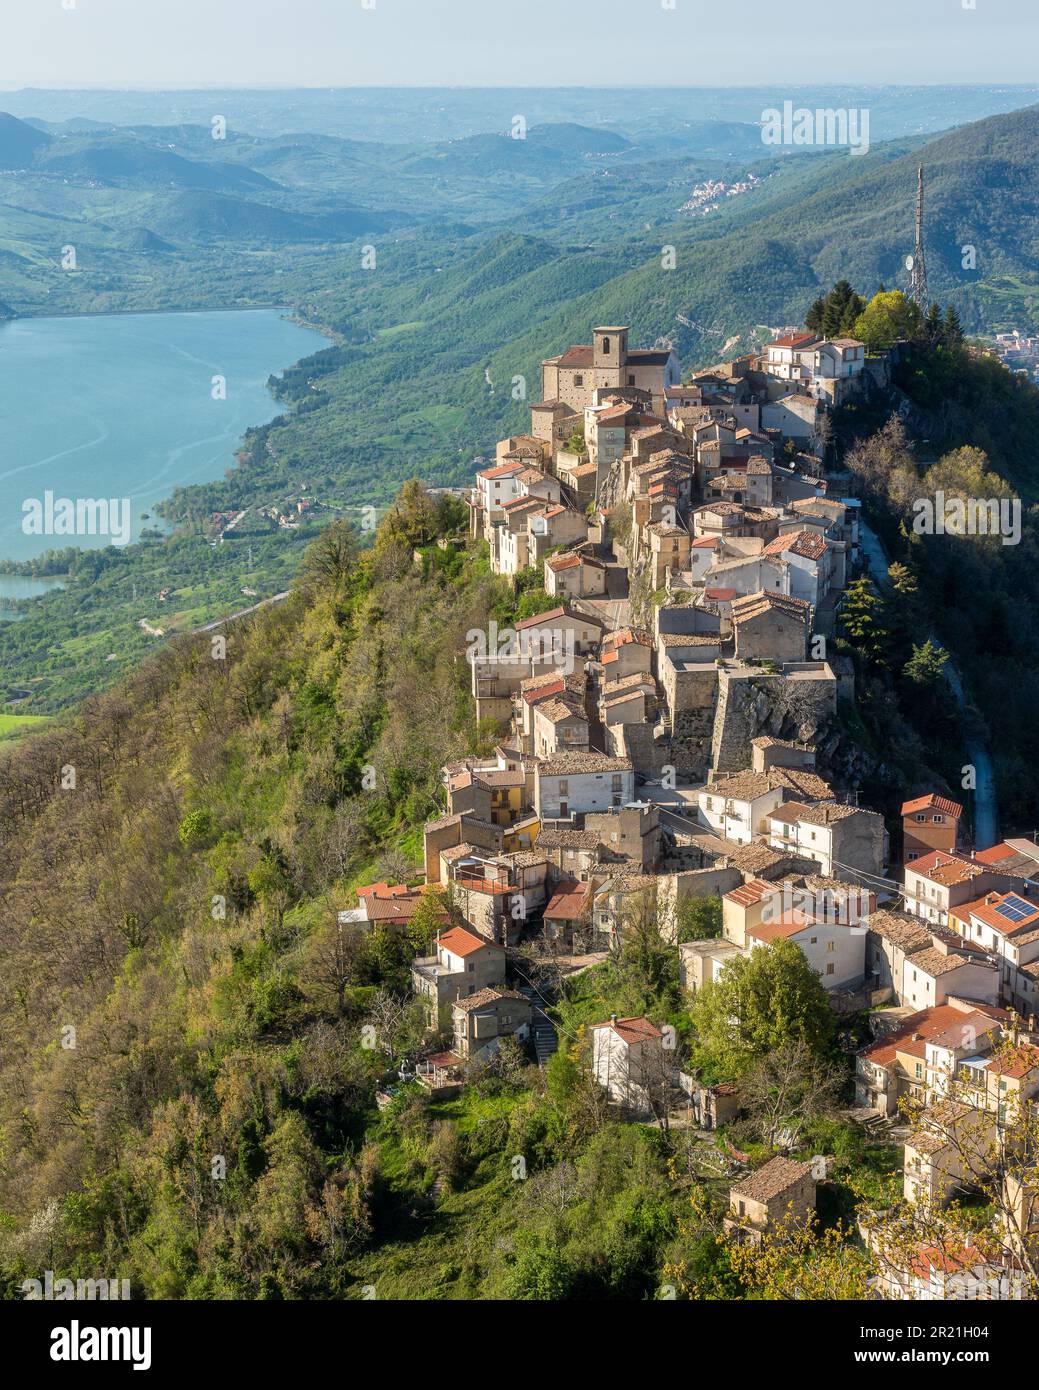 Vue panoramique sur Monteferrante et le lac Bomba, magnifique village de la province de Chieti, Abruzzes, centre de l'Italie. Banque D'Images